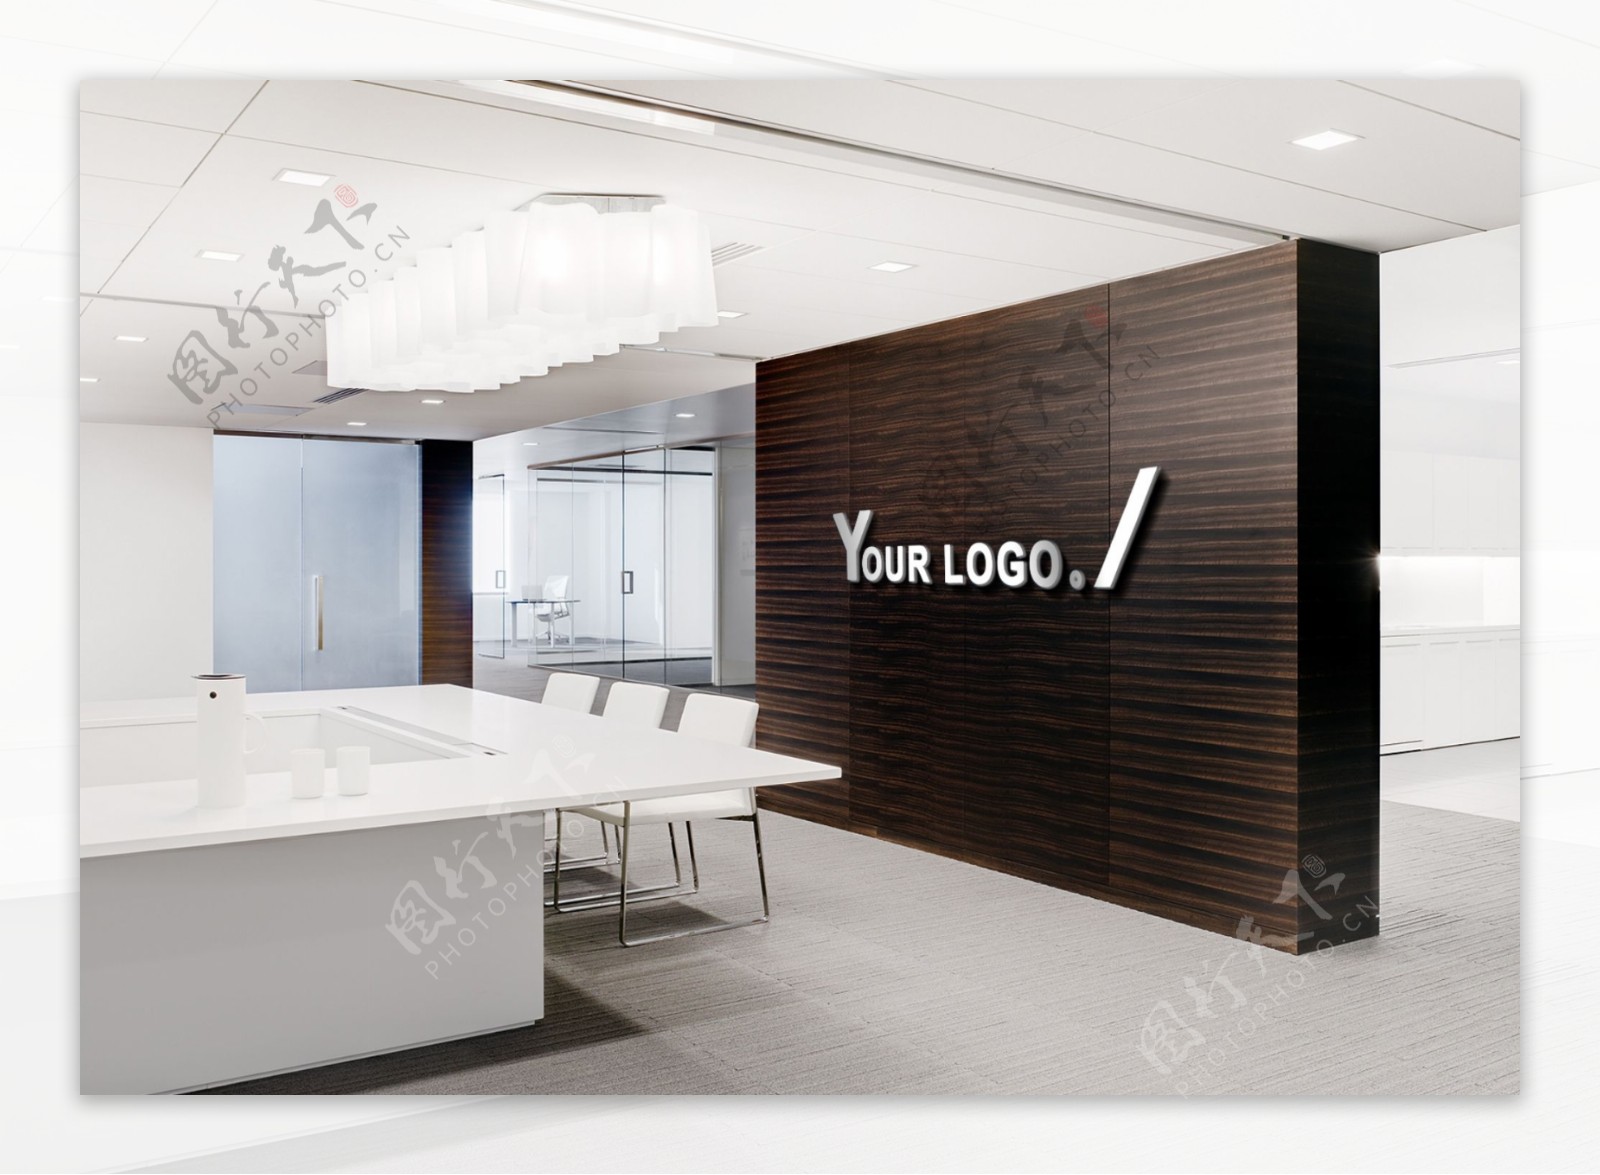 LOGO形象墙办公室场景贴图样